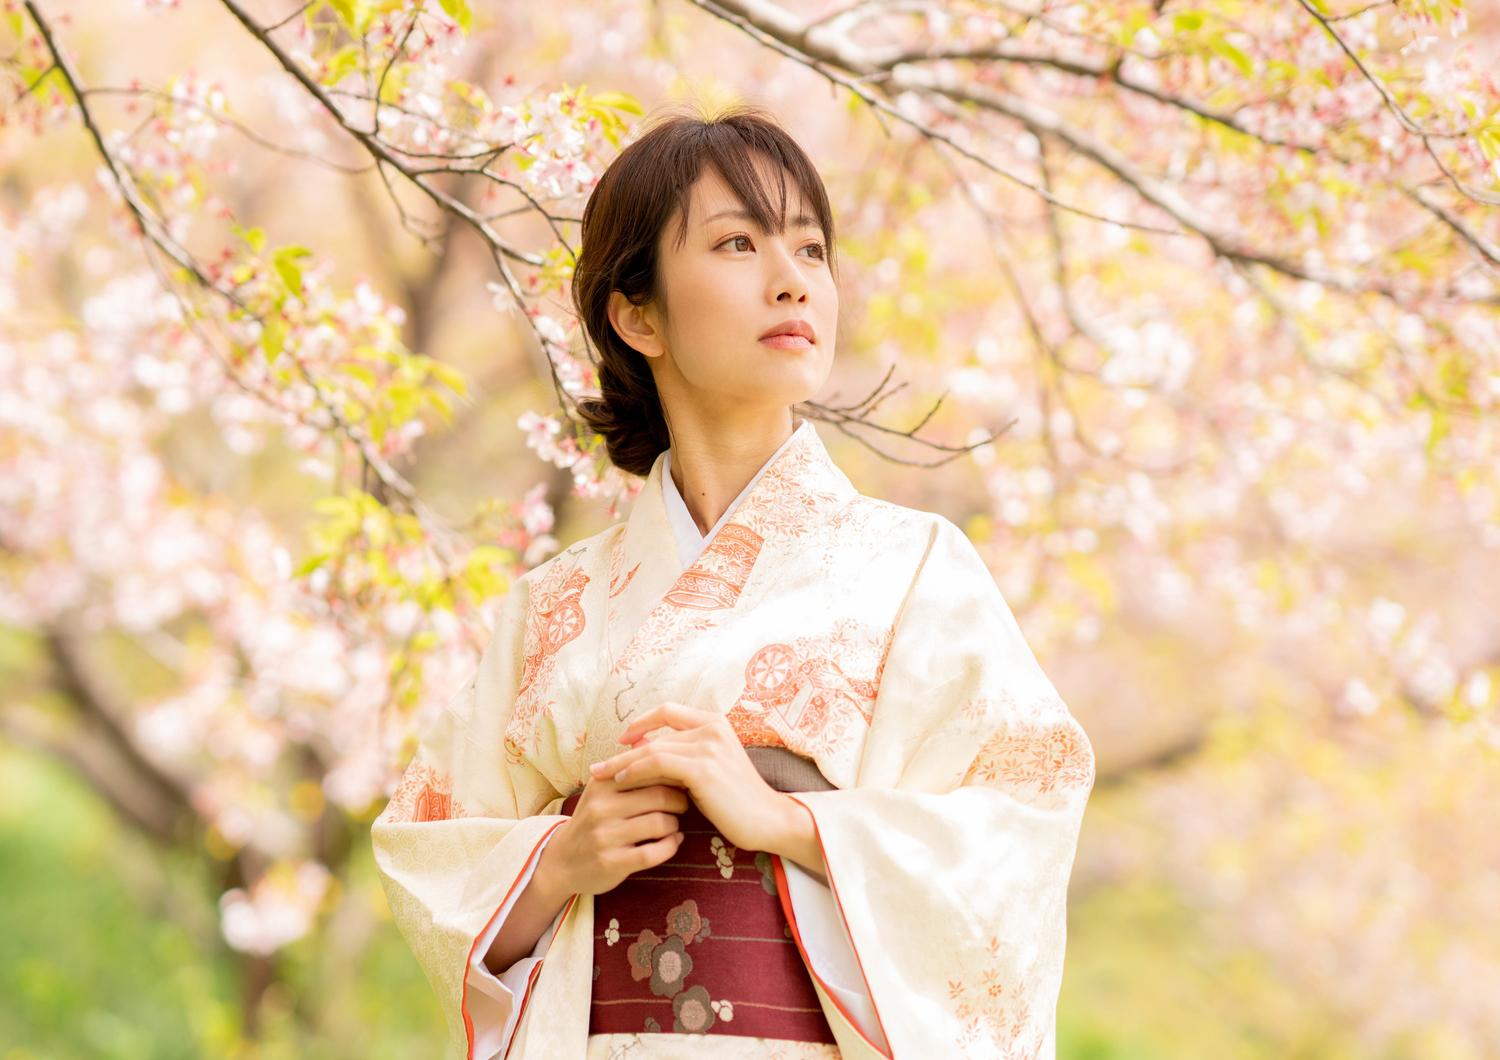 关于和服的传统文化和历史 Karuta 让我们一起学习日本吧